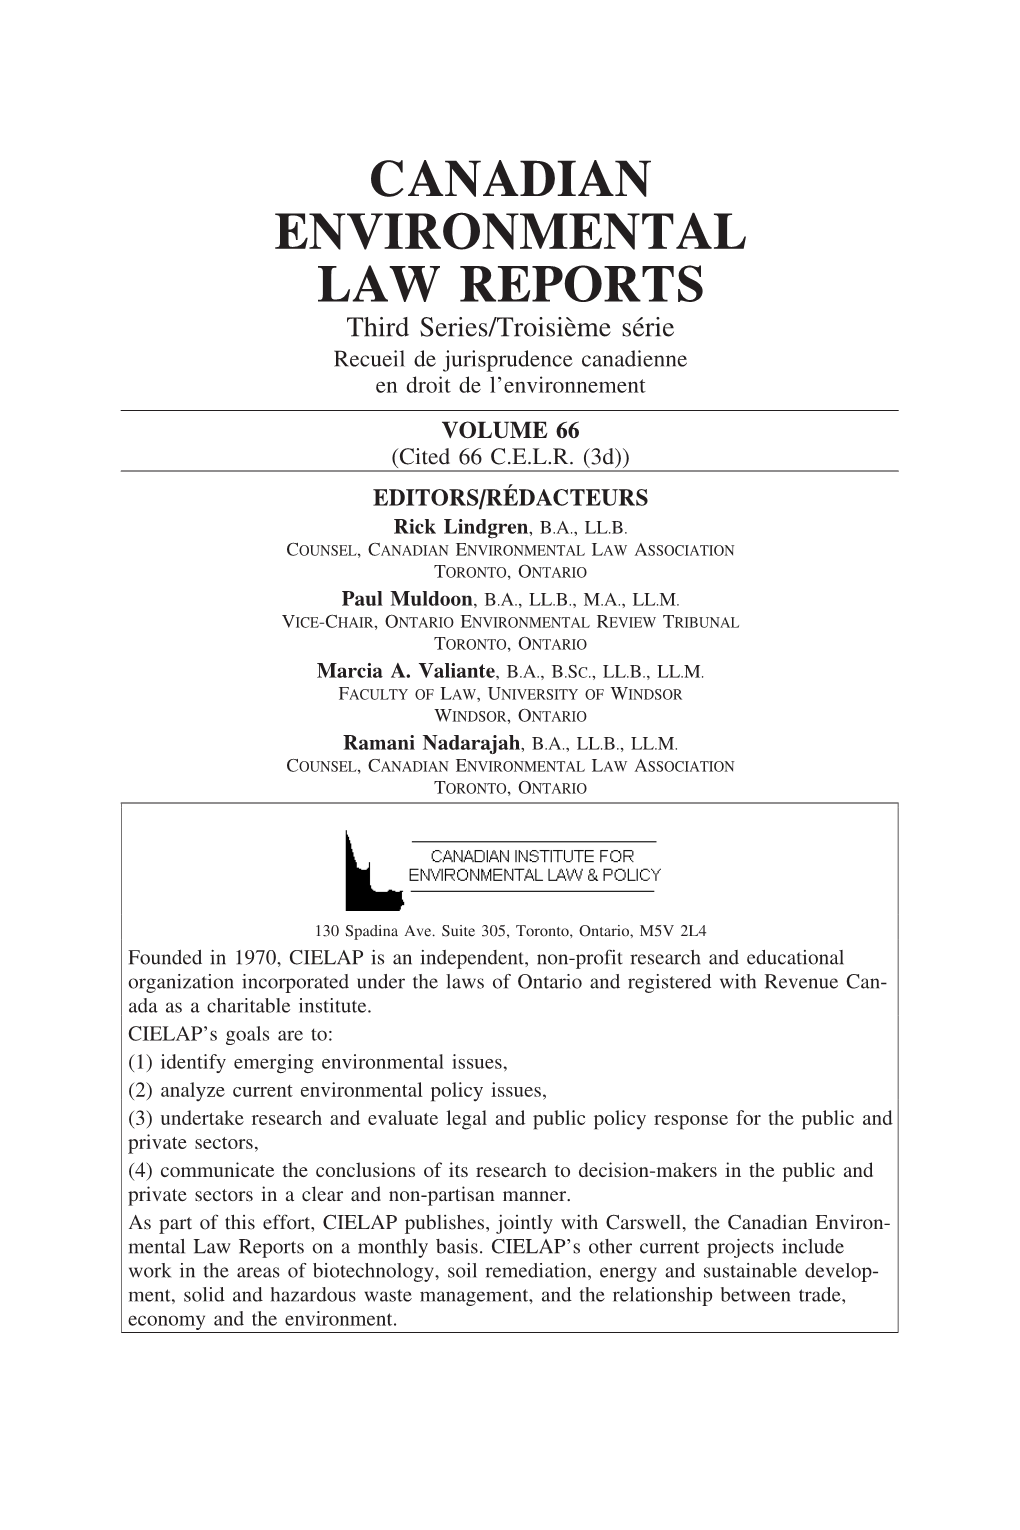 CANADIAN ENVIRONMENTAL LAW REPORTS Third Series/Troisi`Eme S´Erie Recueil De Jurisprudence Canadienne En Droit De L’Environnement VOLUME 66 (Cited 66 C.E.L.R